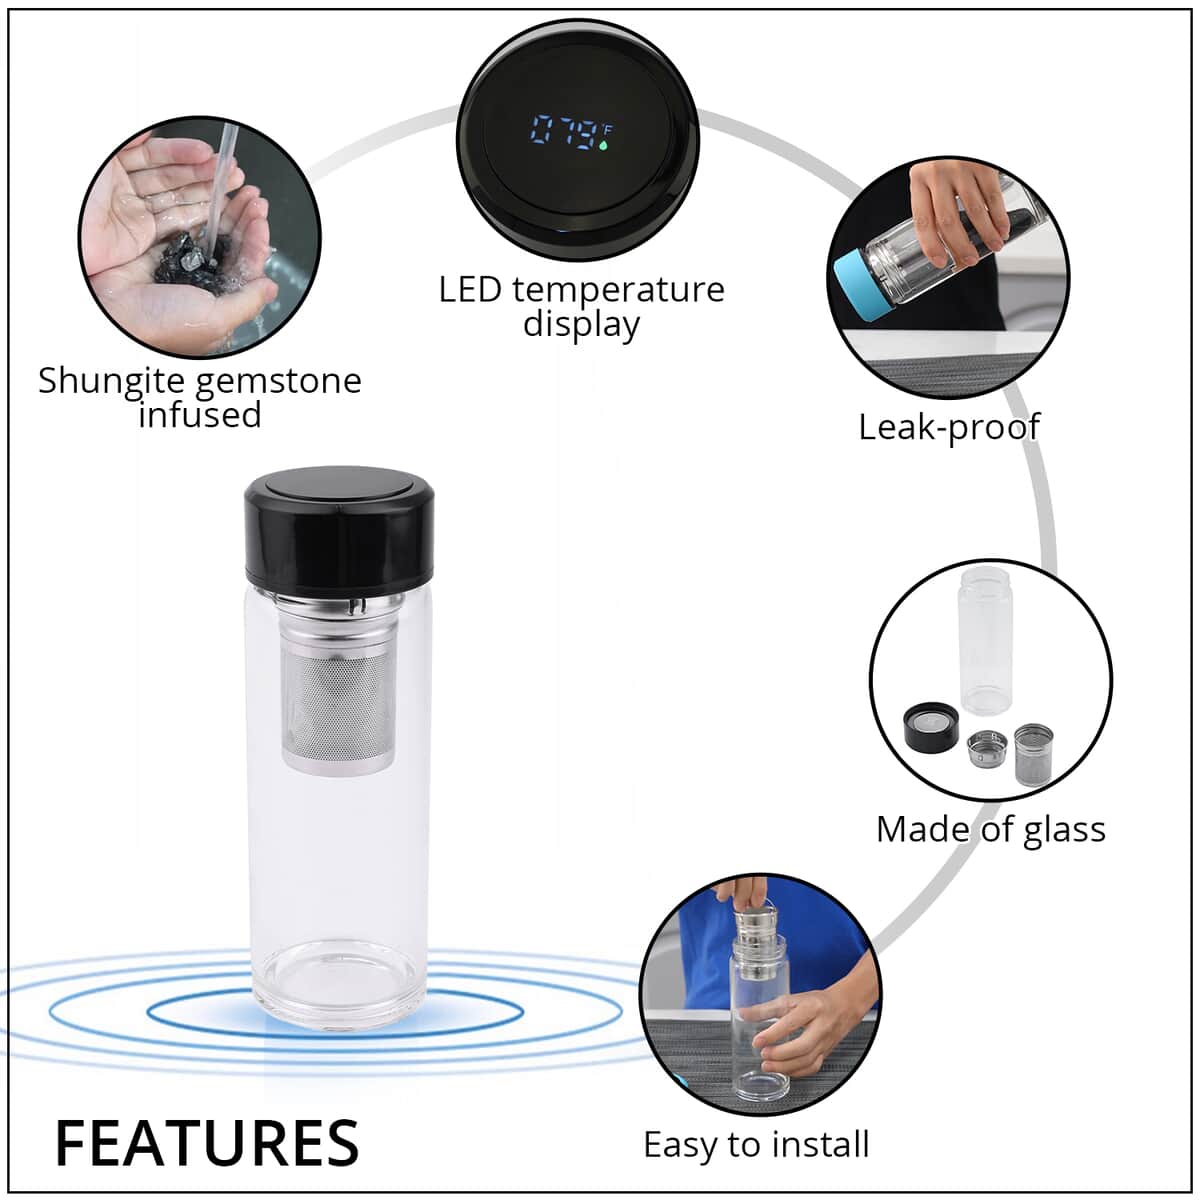 Elite Shungite Filter Infuser and Temperature Sensor Smart Water Bottle (LED Display, Long Filter) - Black image number 2